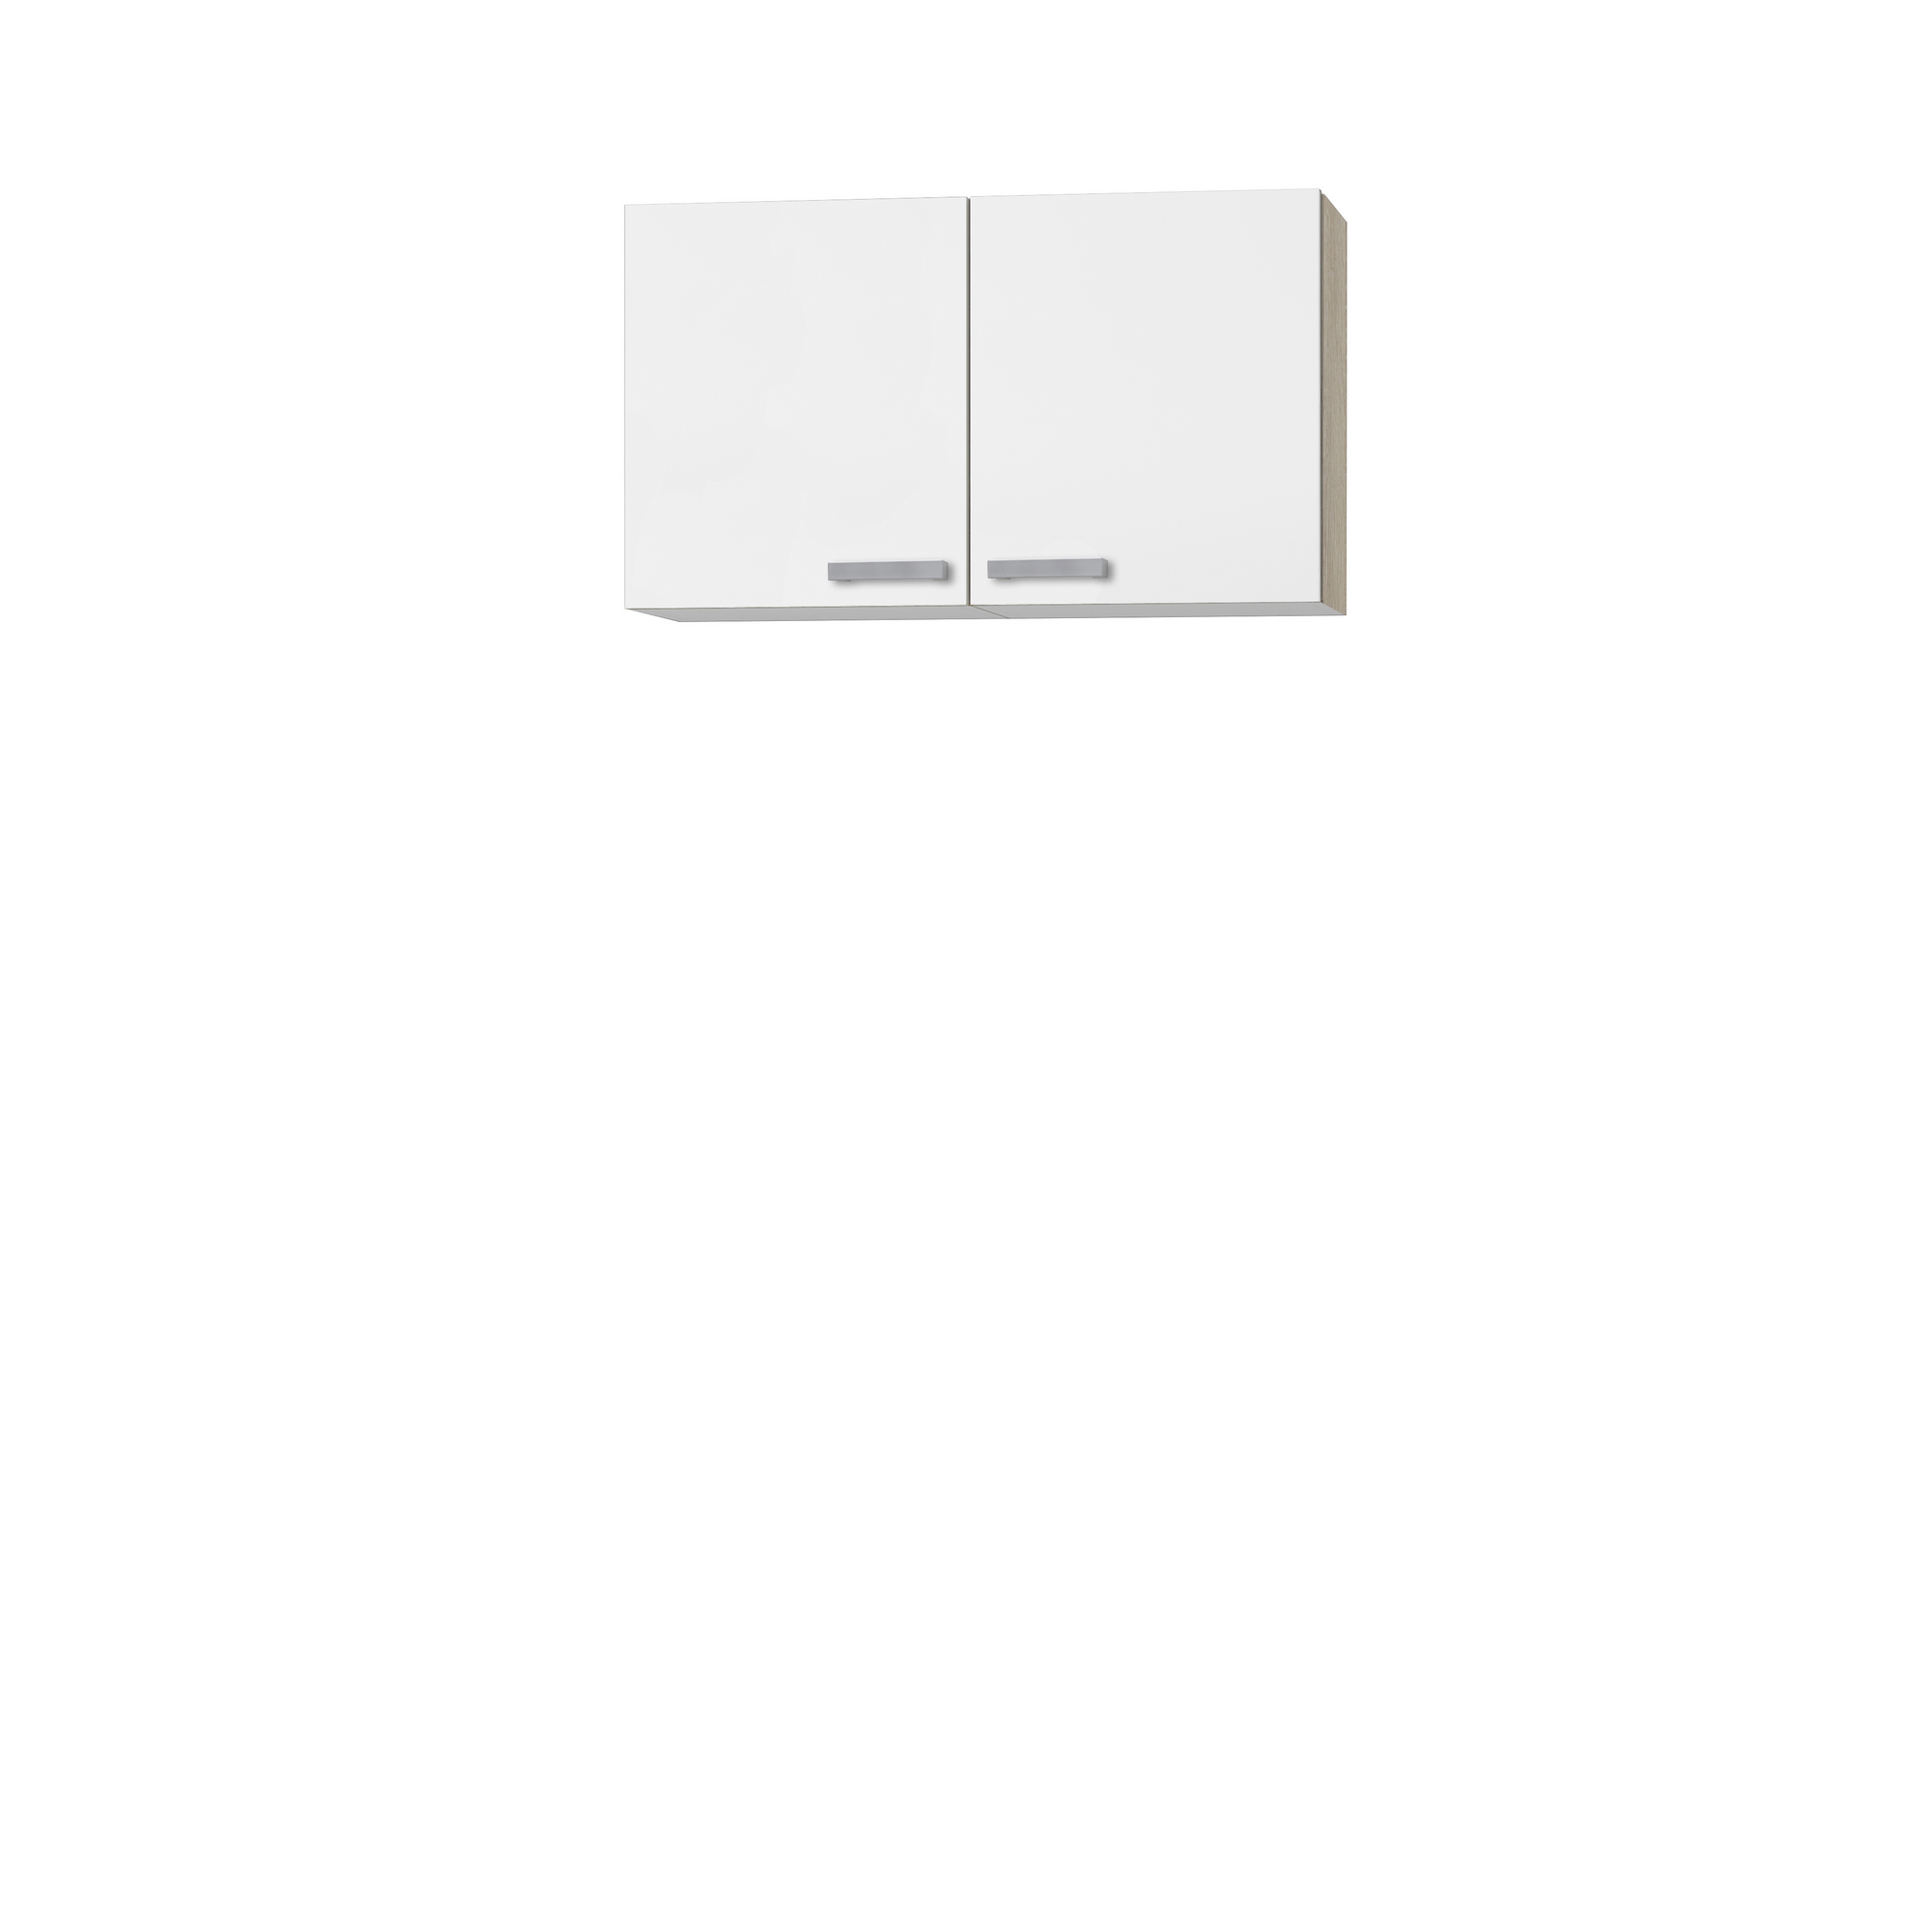 Oberschrank 'OPTIkult Zamora' weiß/eichefarben 100 x 57,6 x 60 cm + product picture